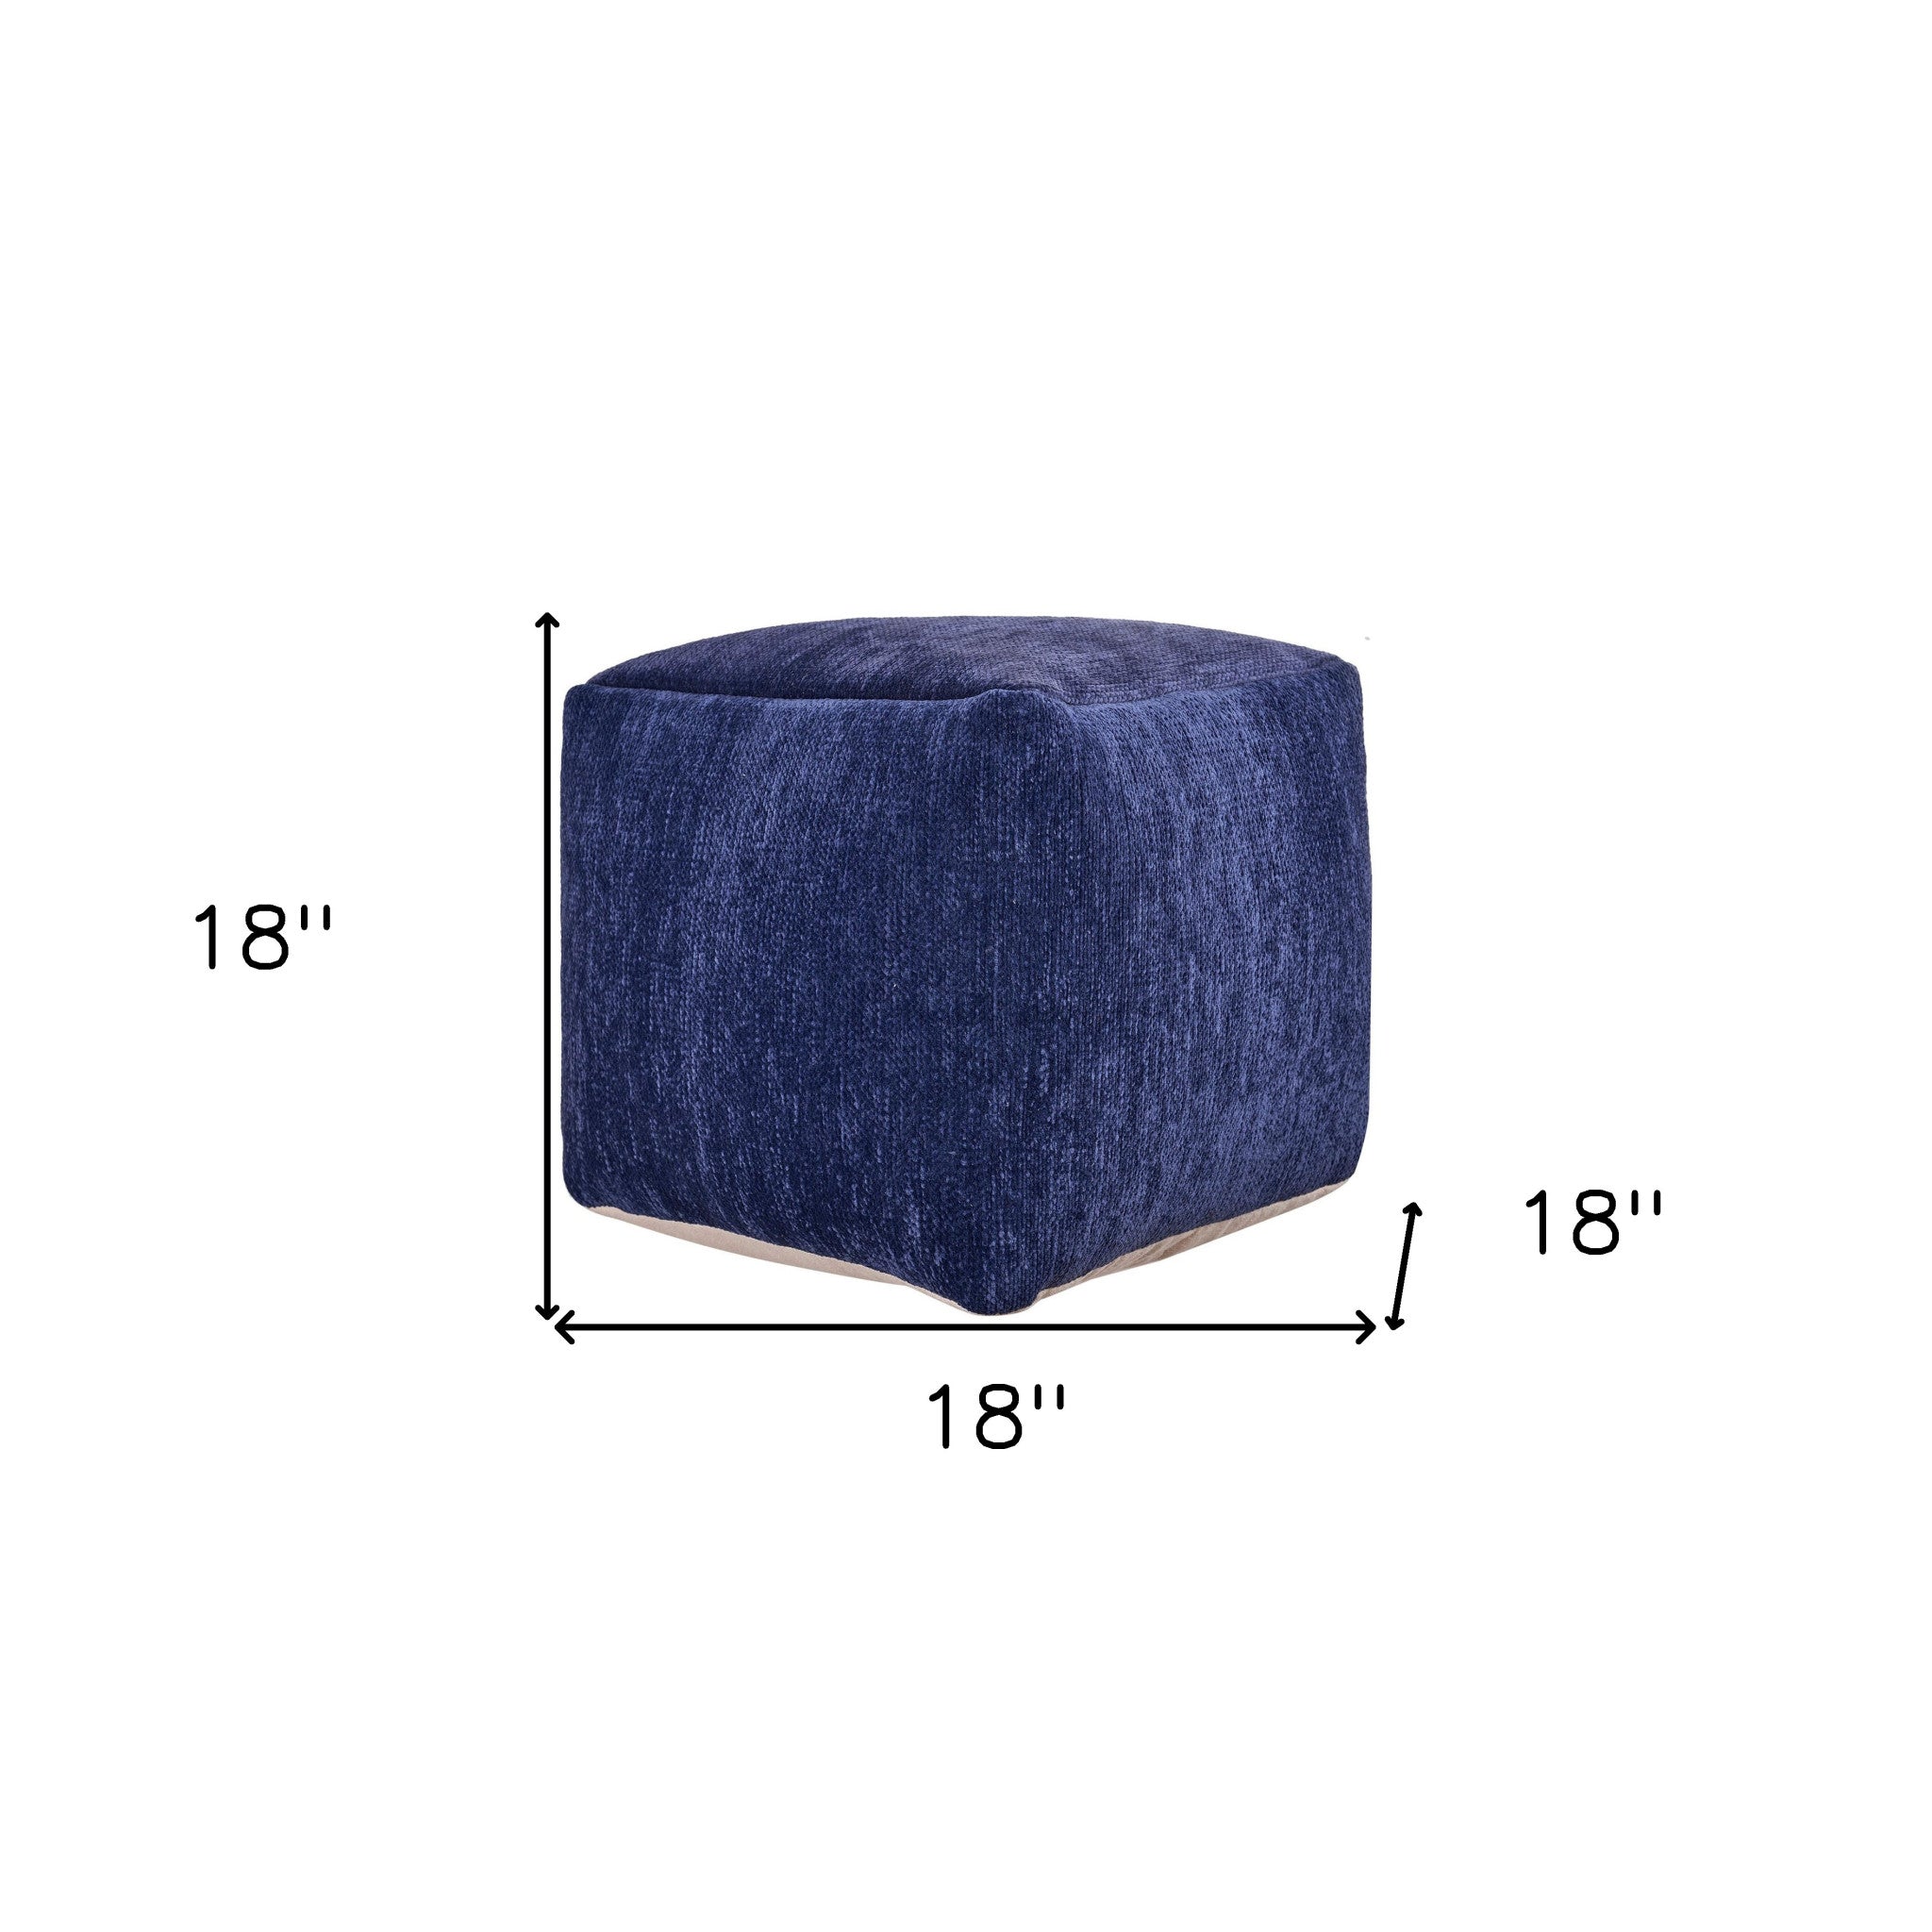 18" Blue Chenille Cube Pouf Ottoman